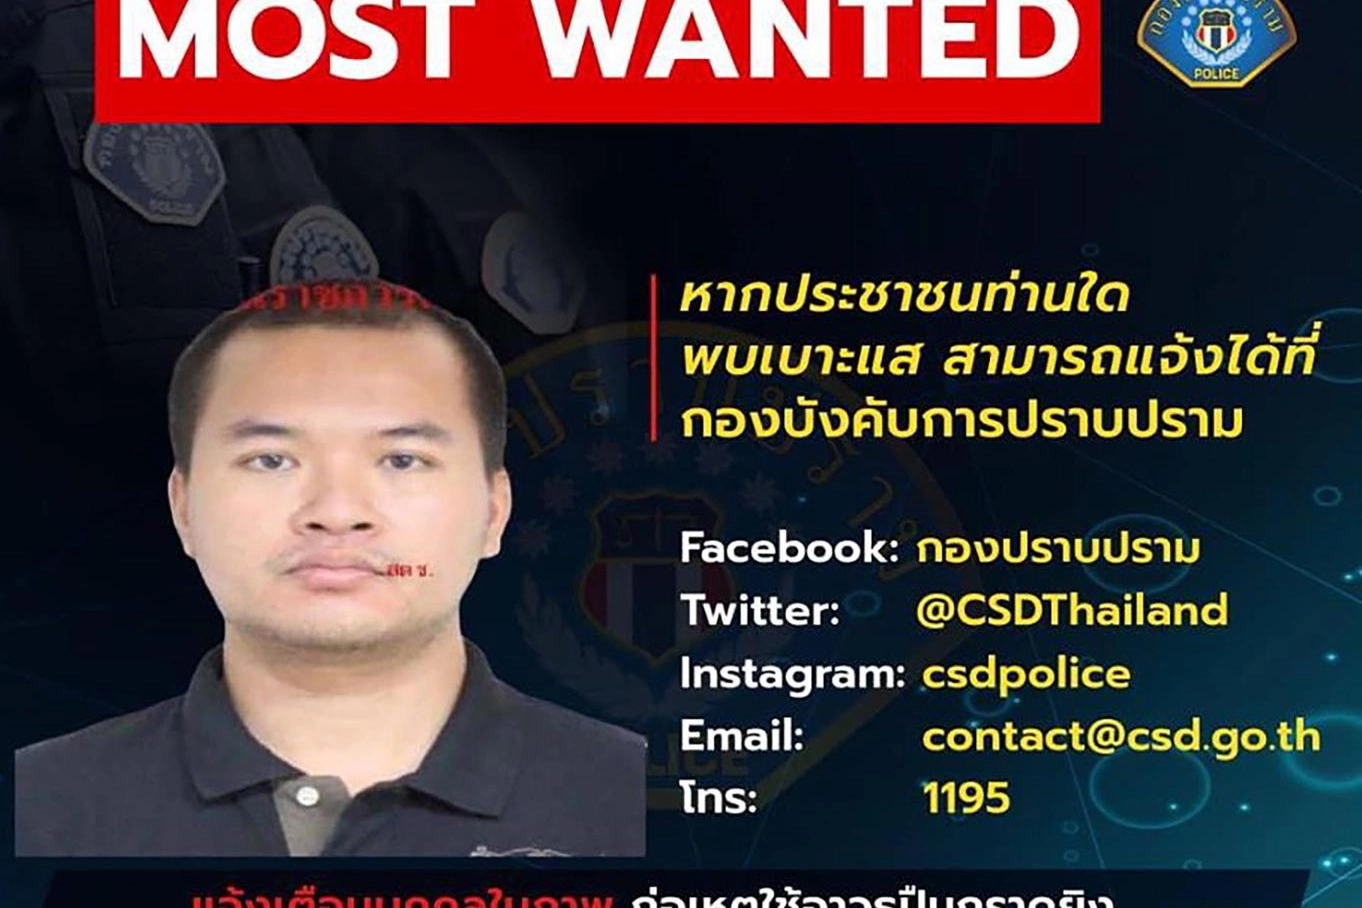 Thailandia, l'avviso 'wanted' per il soldato che ha fatto strage (Ansa)